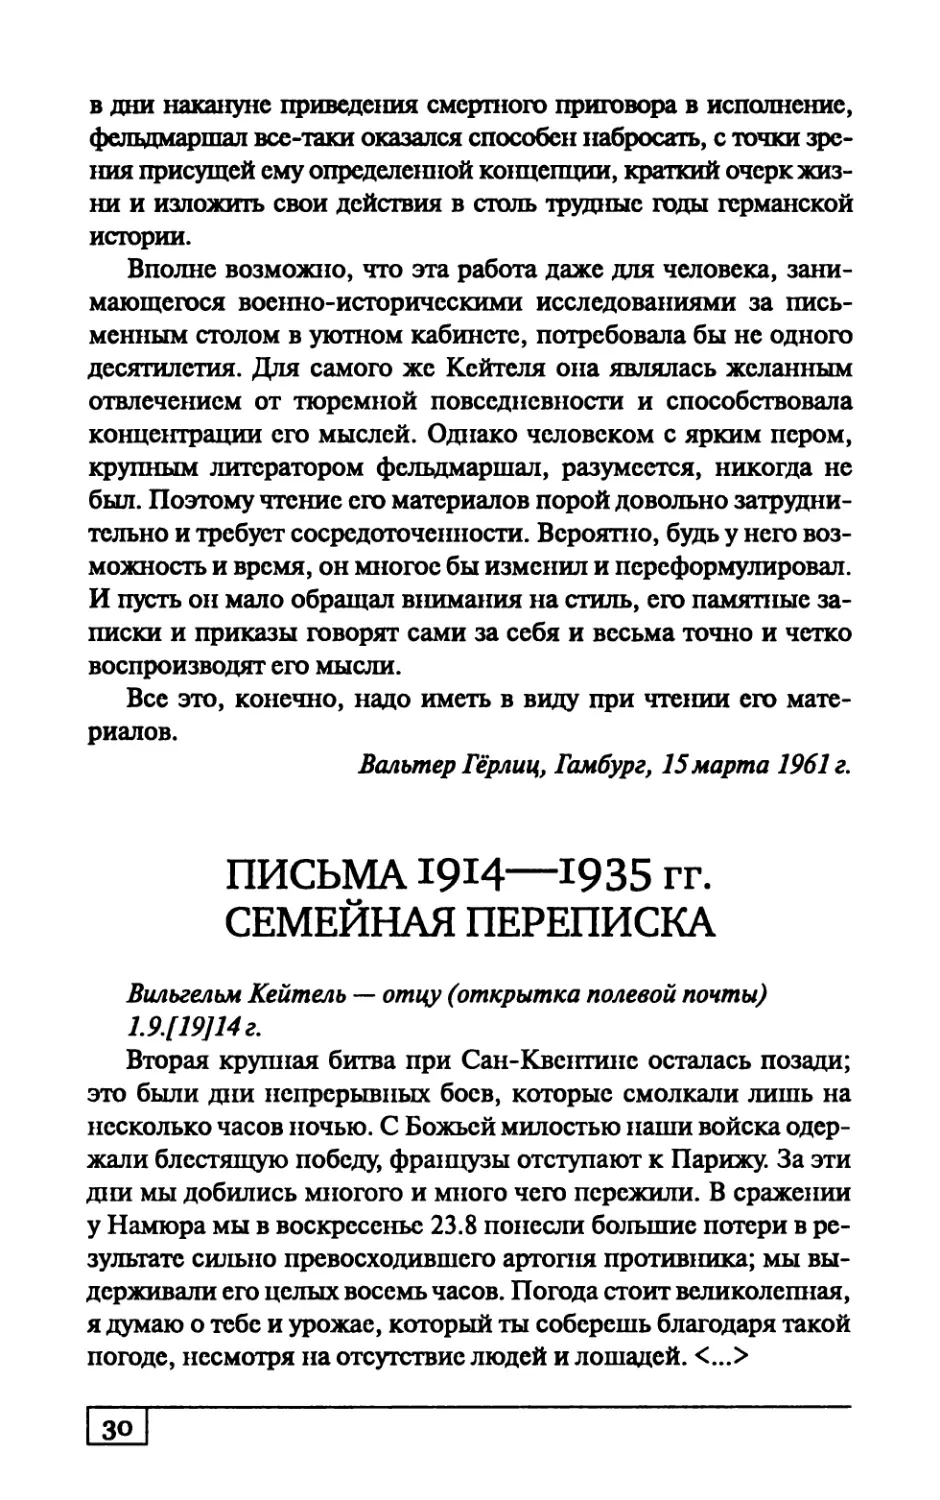 ПИСЬМА 1914— 1935 гг. СЕМЕЙНАЯ ПЕРЕПИСКА